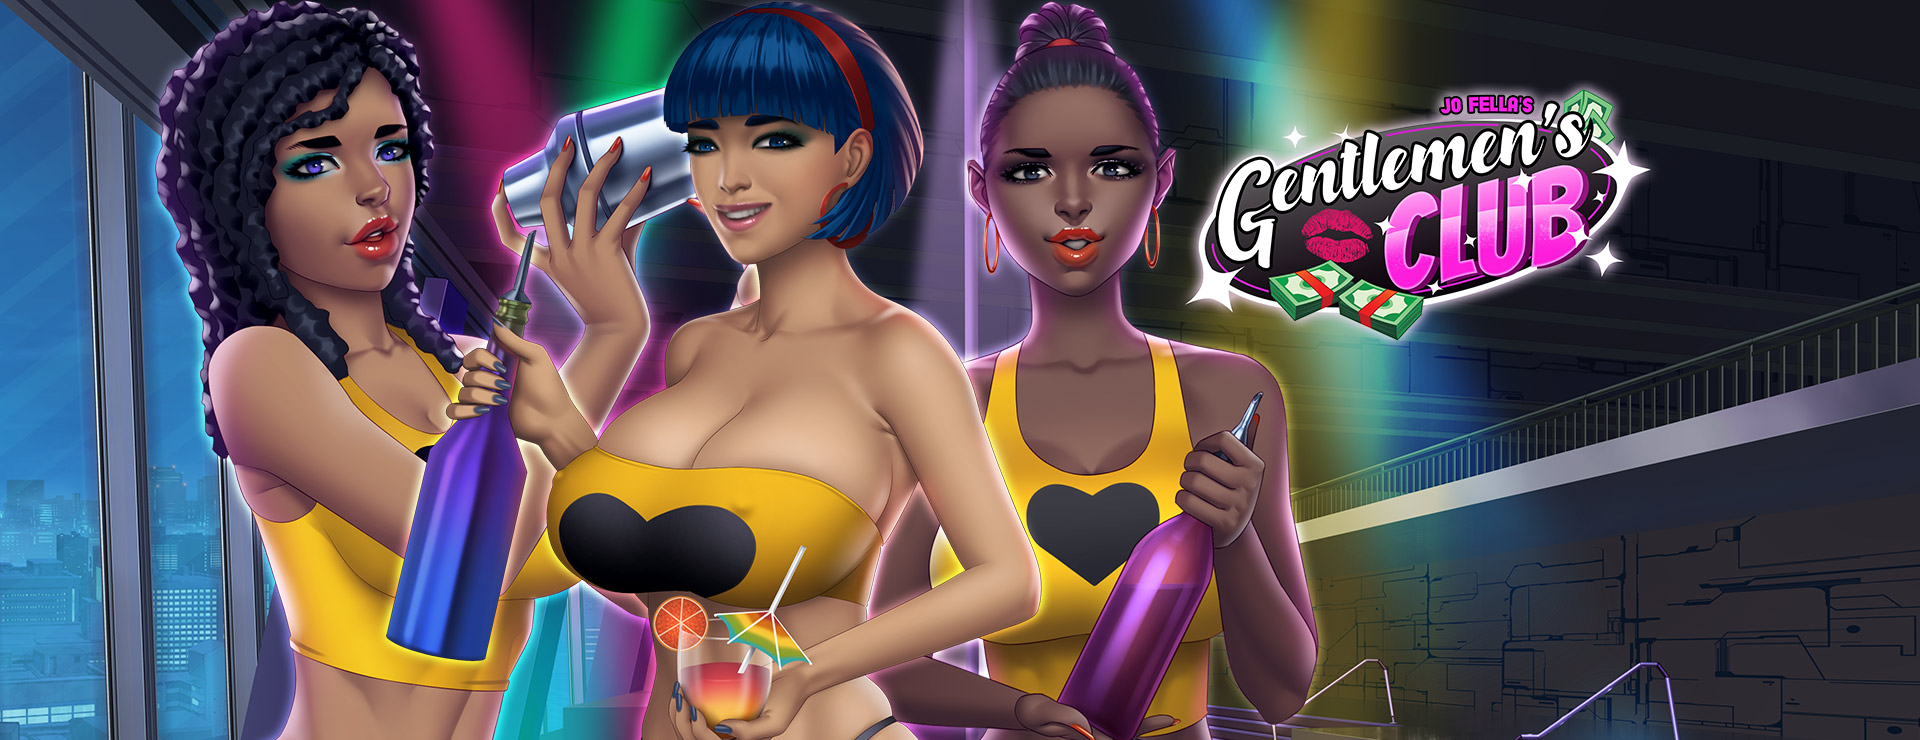 Gentlemen's Club Game - Przygodowa akcji Gra